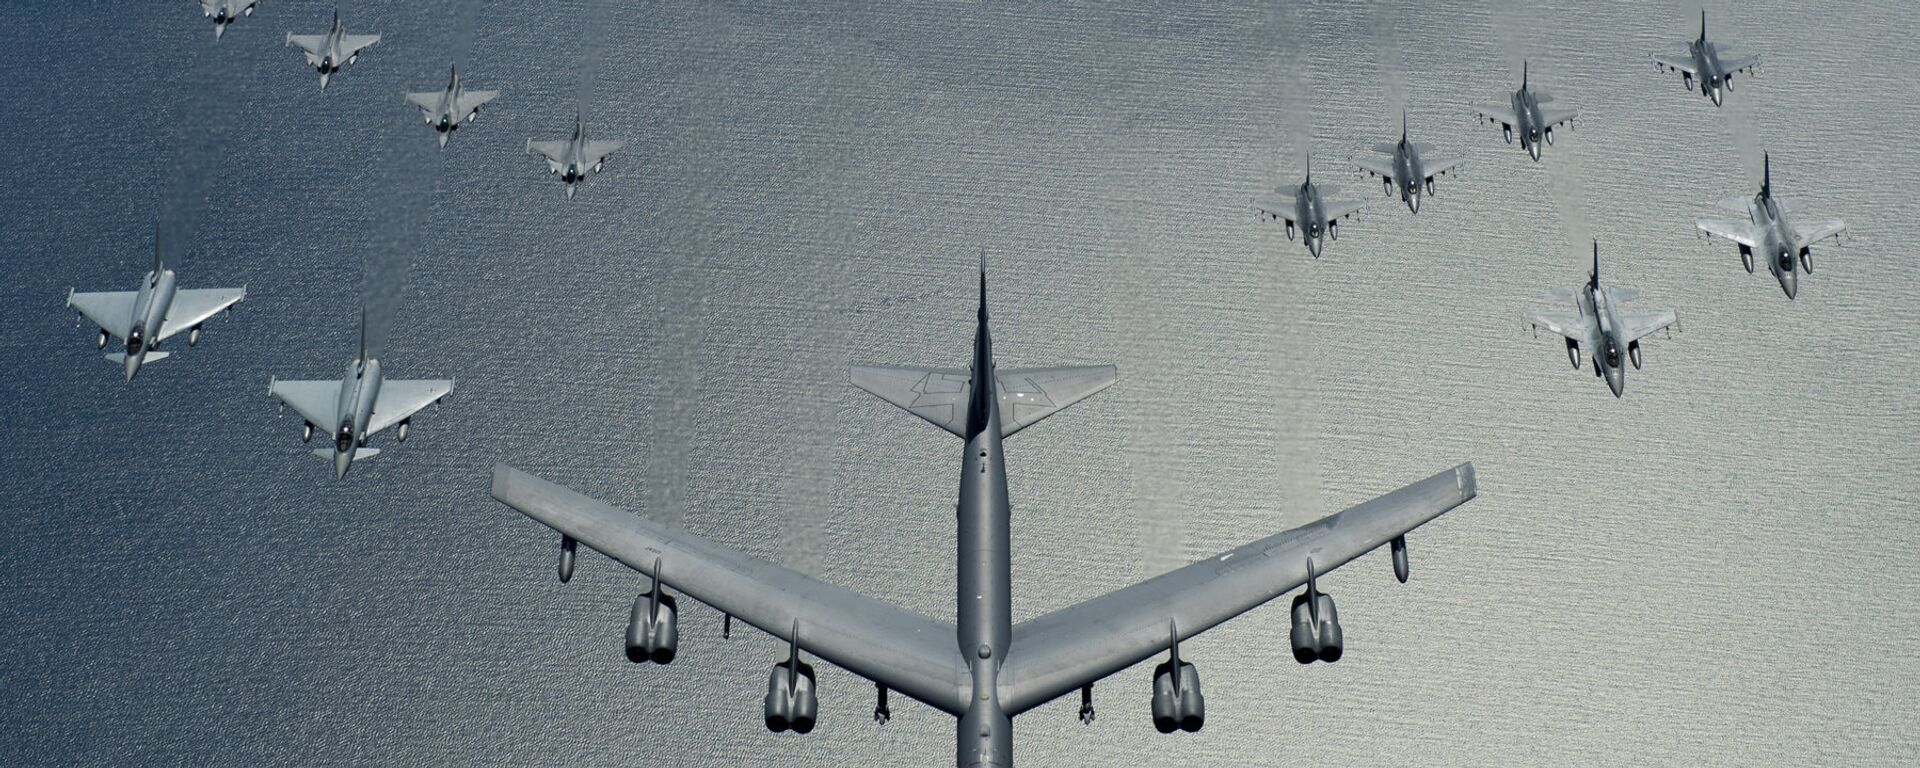 Un bombardero estadounidense B-52 liderando una formación de los cazas de la OTAN durante las maniobras, en 2016 - Sputnik Mundo, 1920, 08.09.2020